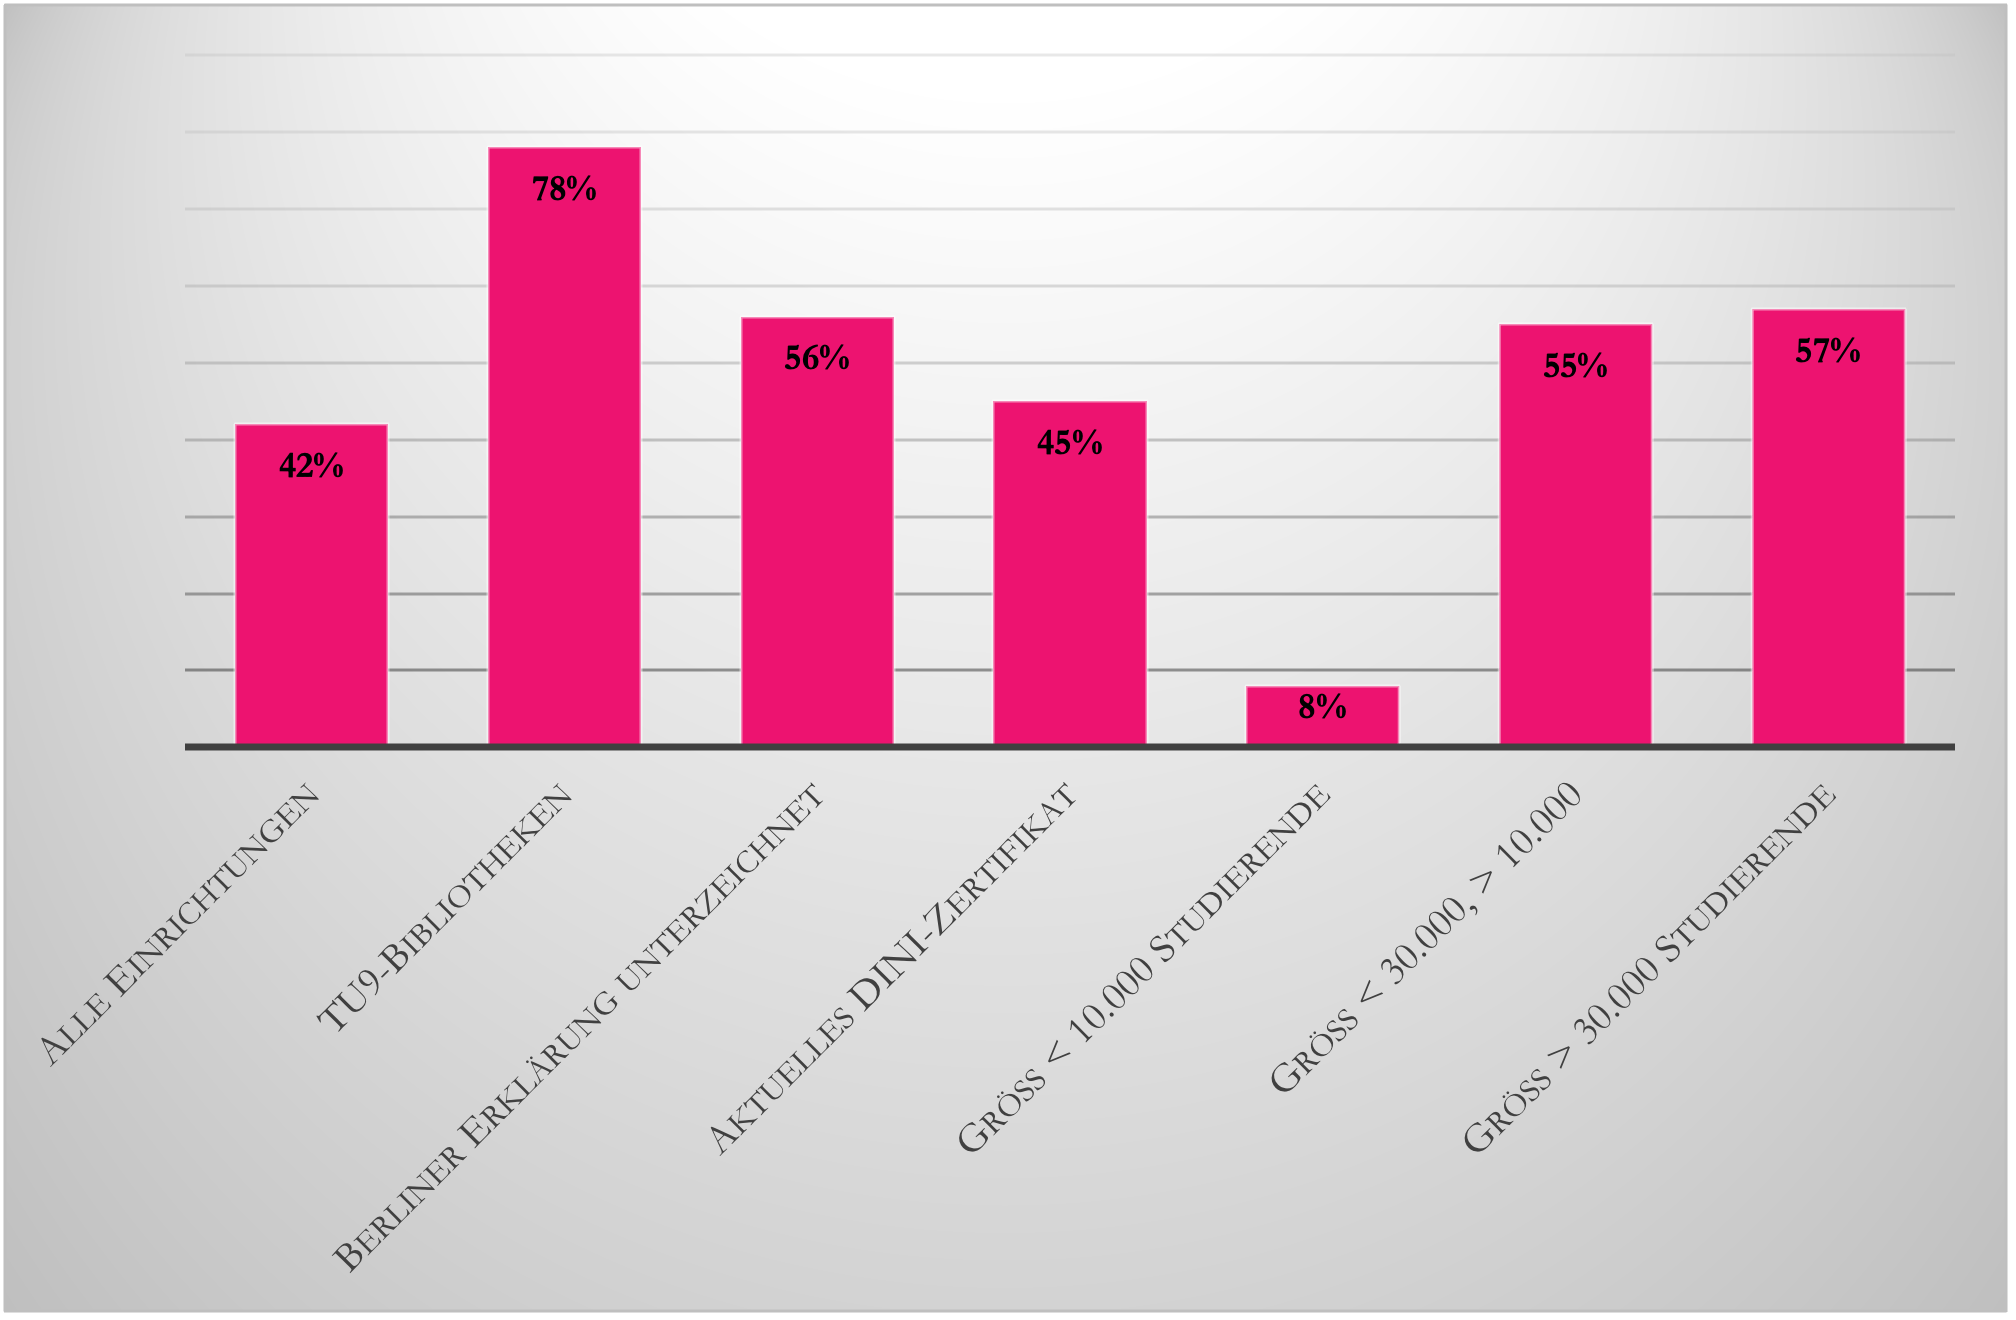 Abbildung 12: Häufigkeit von beworbenen und nicht beworbenen Full-Services gesamt bei Vorliegen verschiedener Einflussfaktoren in Prozent.